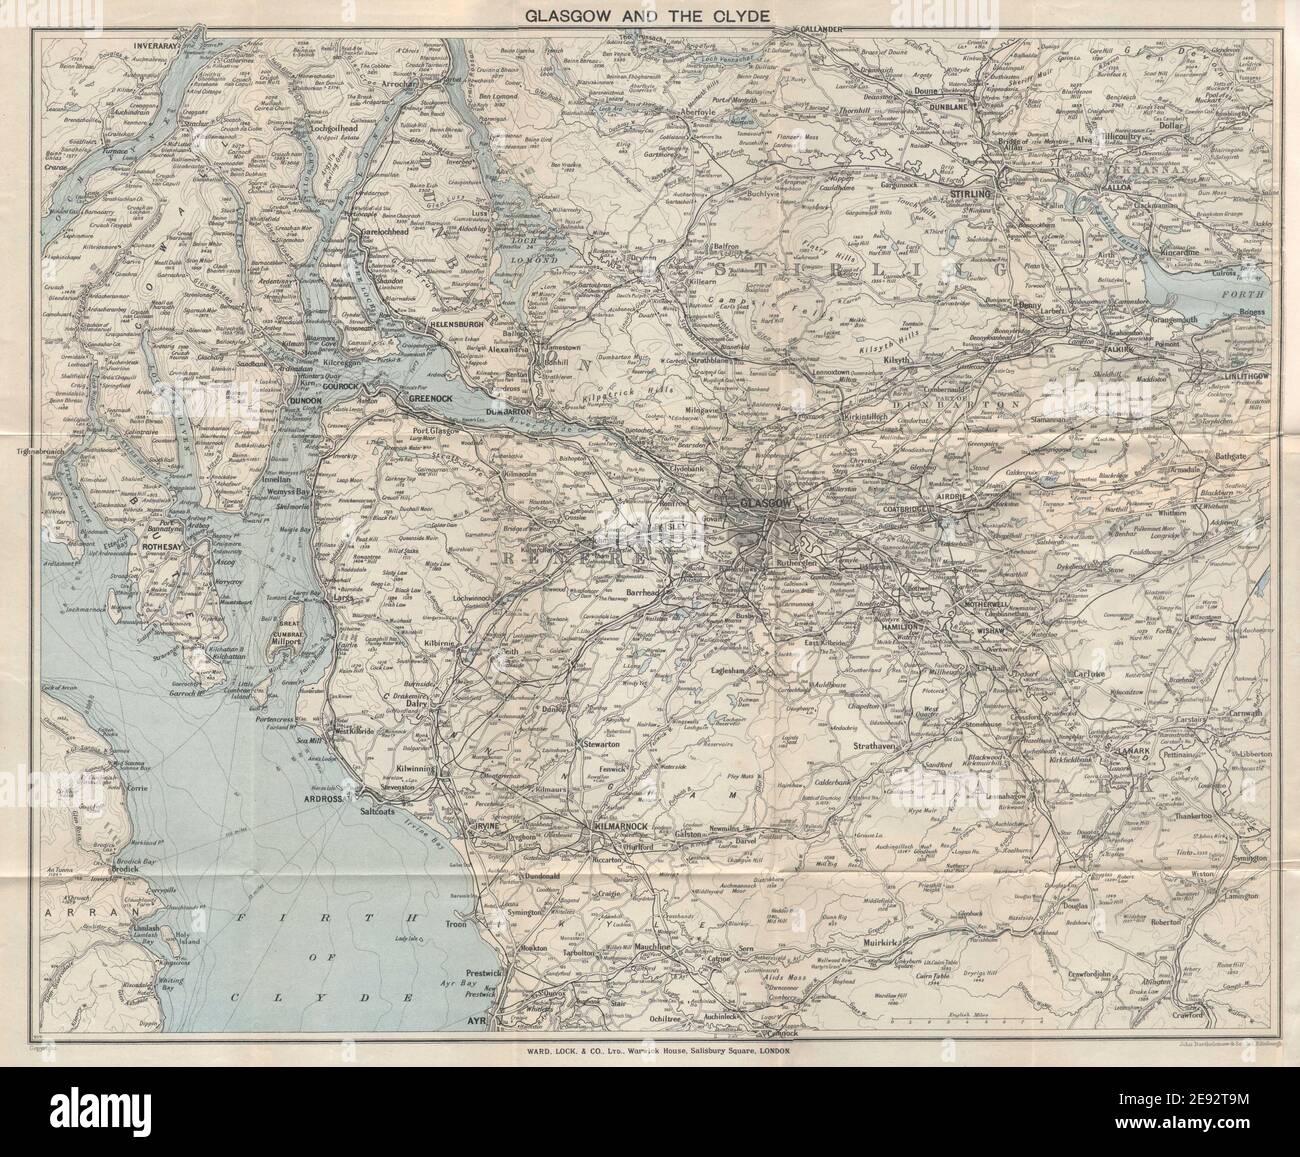 GLASGOW y EL CLYDE mapa turístico vintage. Escocia. BLOQUEO DE BARRIO 1931 viejo Foto de stock